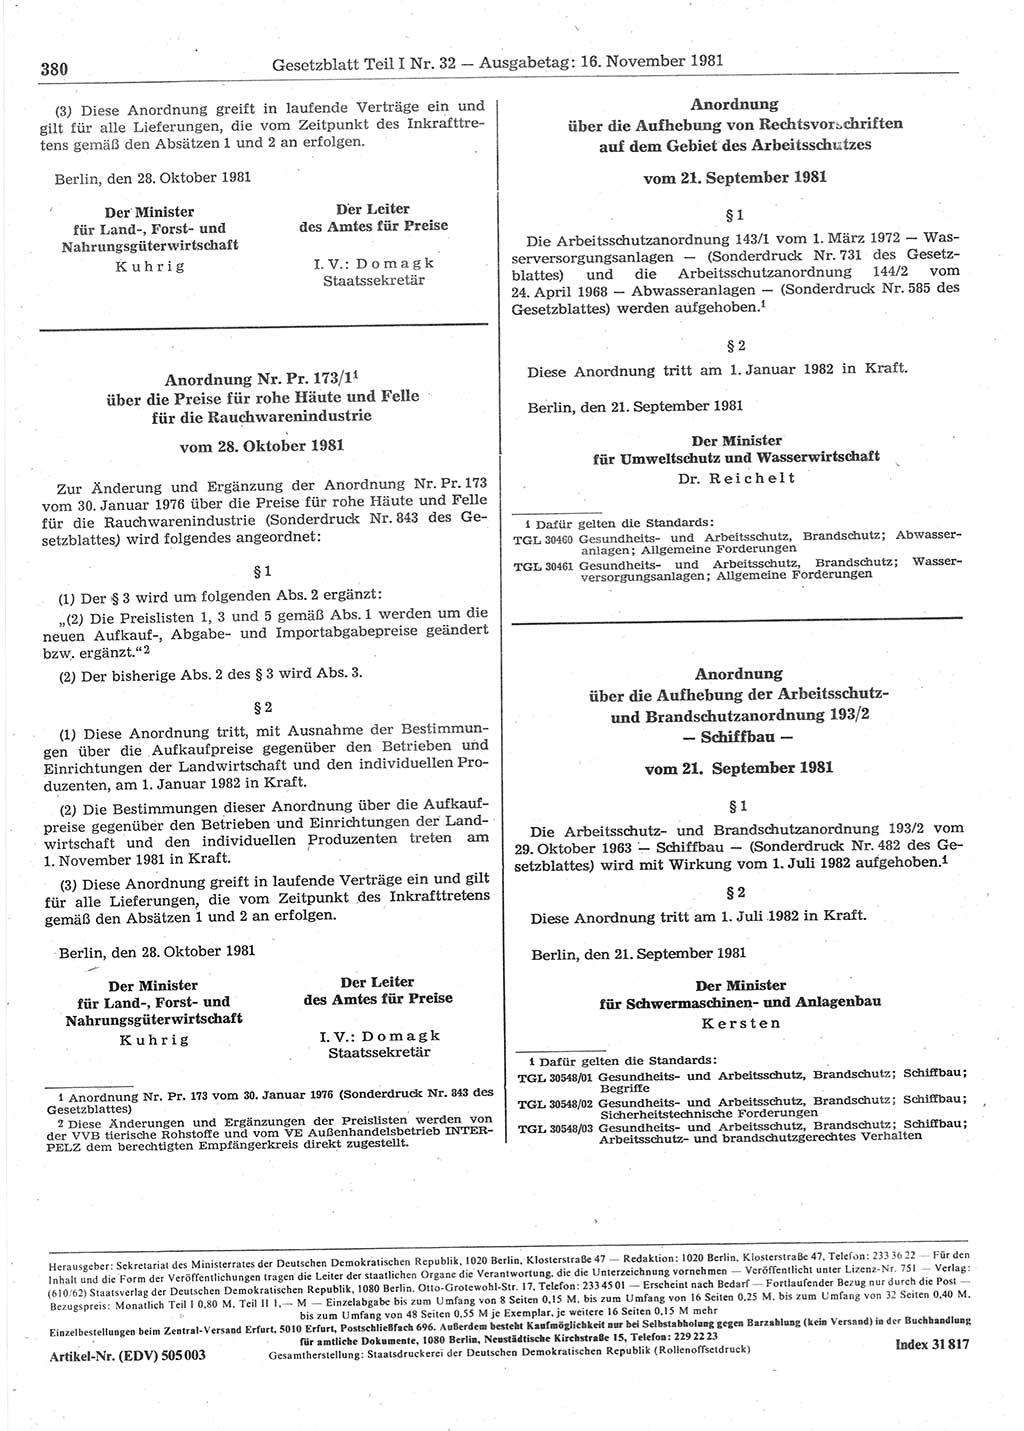 Gesetzblatt (GBl.) der Deutschen Demokratischen Republik (DDR) Teil Ⅰ 1981, Seite 380 (GBl. DDR Ⅰ 1981, S. 380)